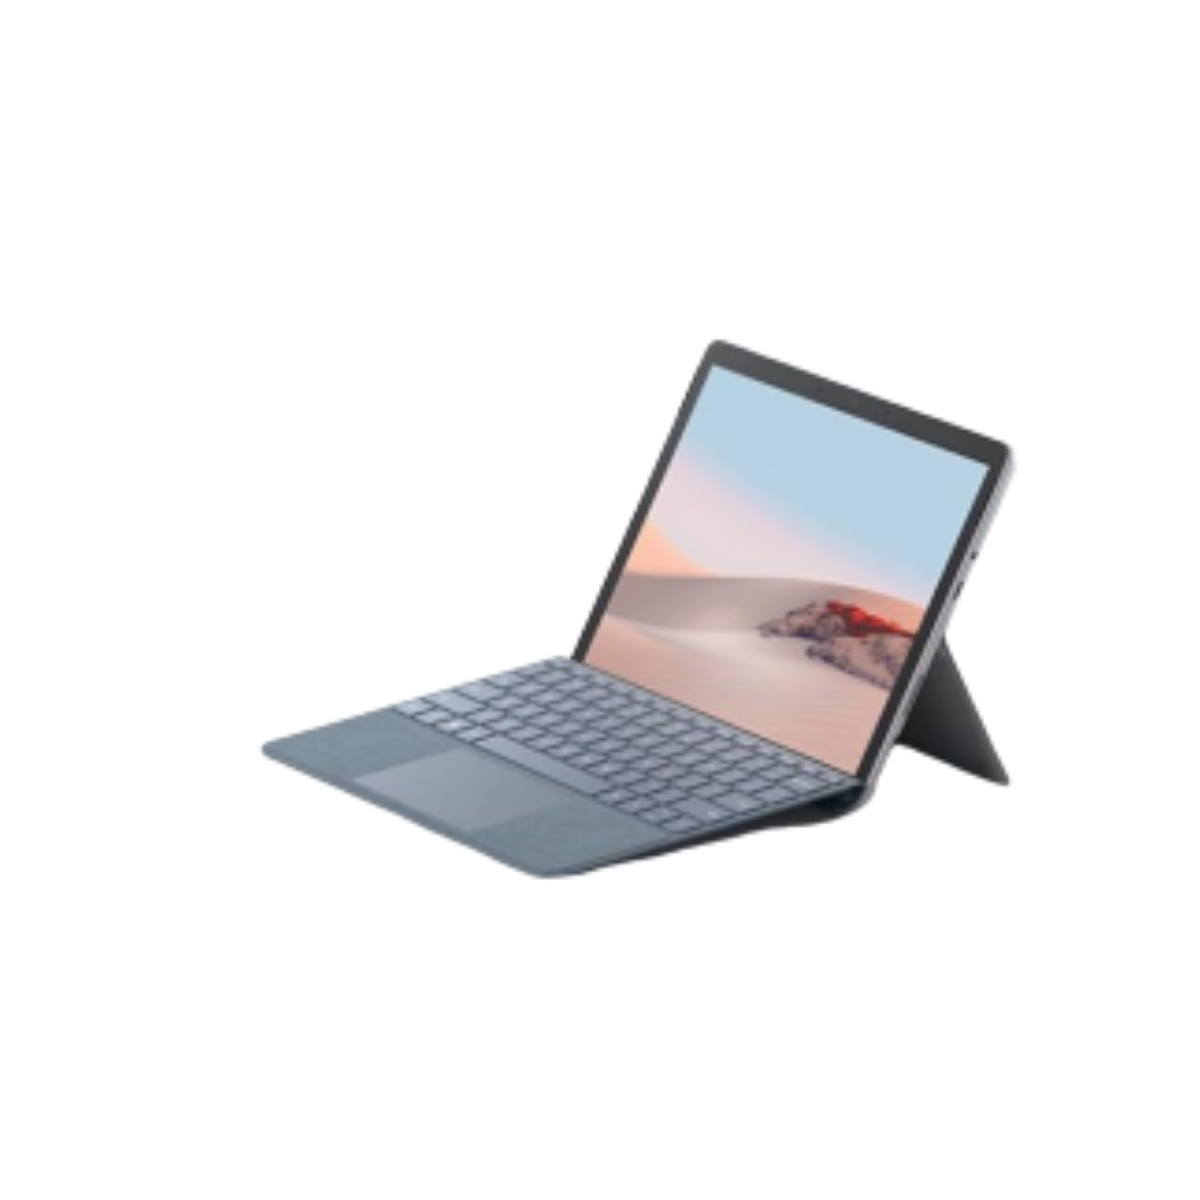 Surface Go 2 specs | Tech Score